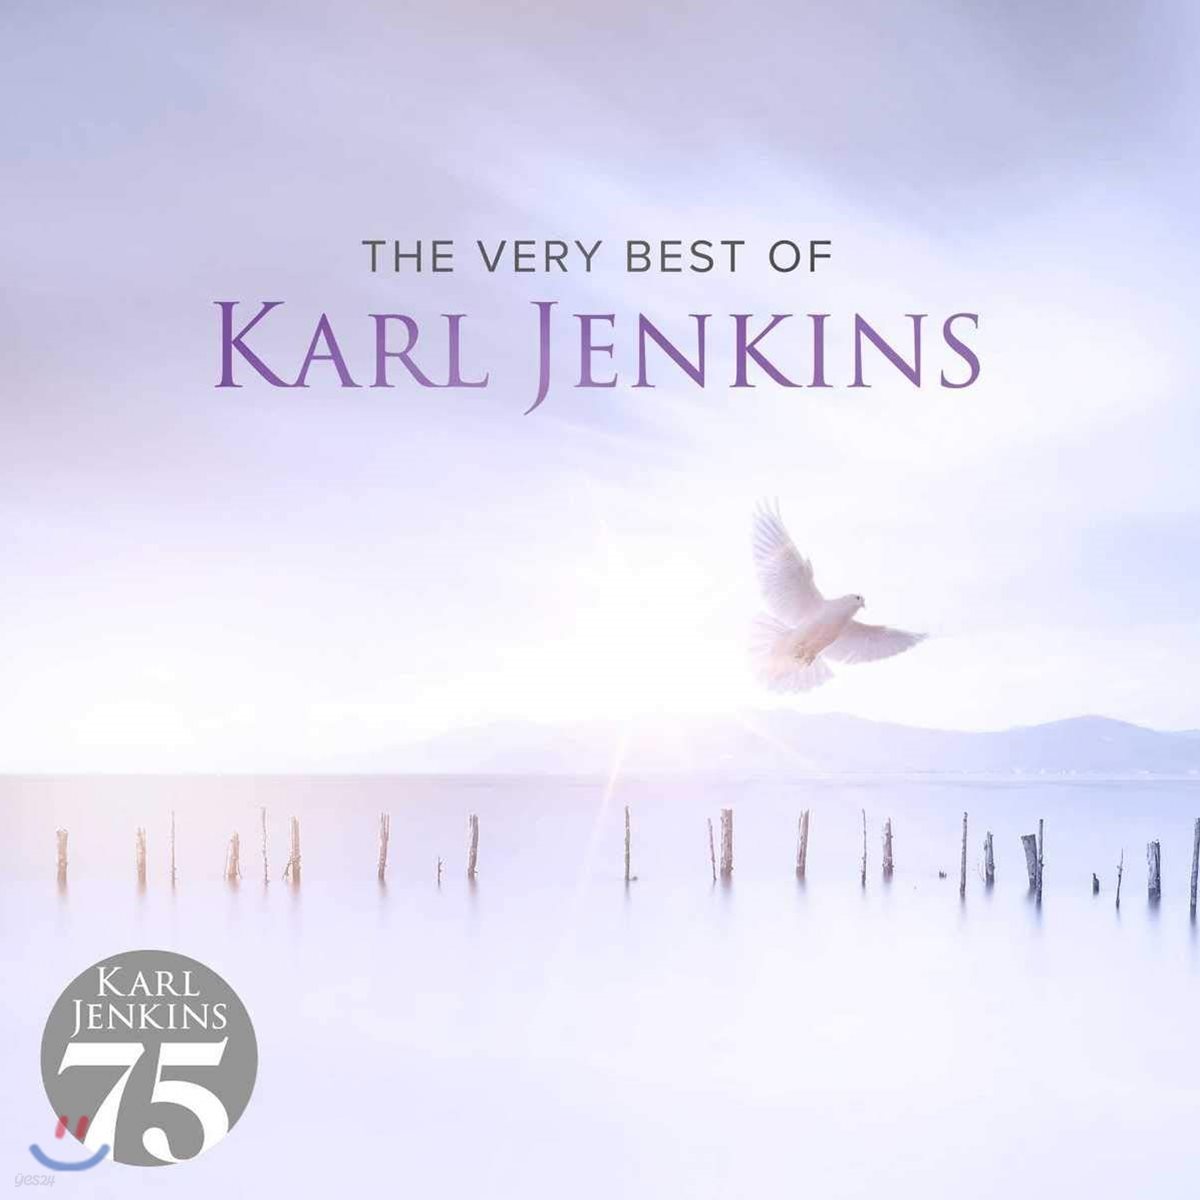 칼 젠킨스 베스트 앨범 (The Very Best of Karl Jenkins)